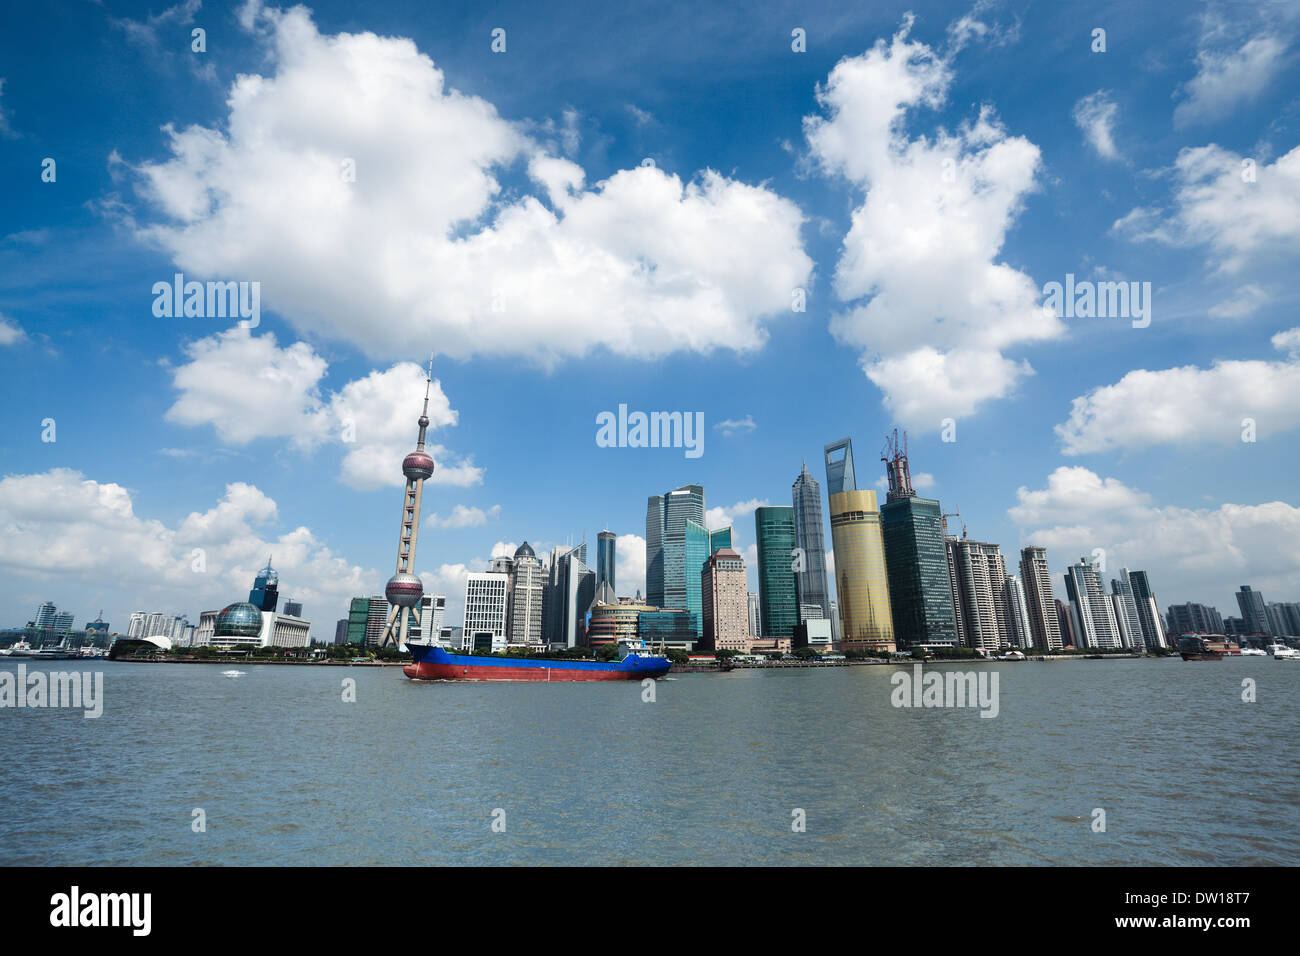 shanghai under the blue sky Stock Photo